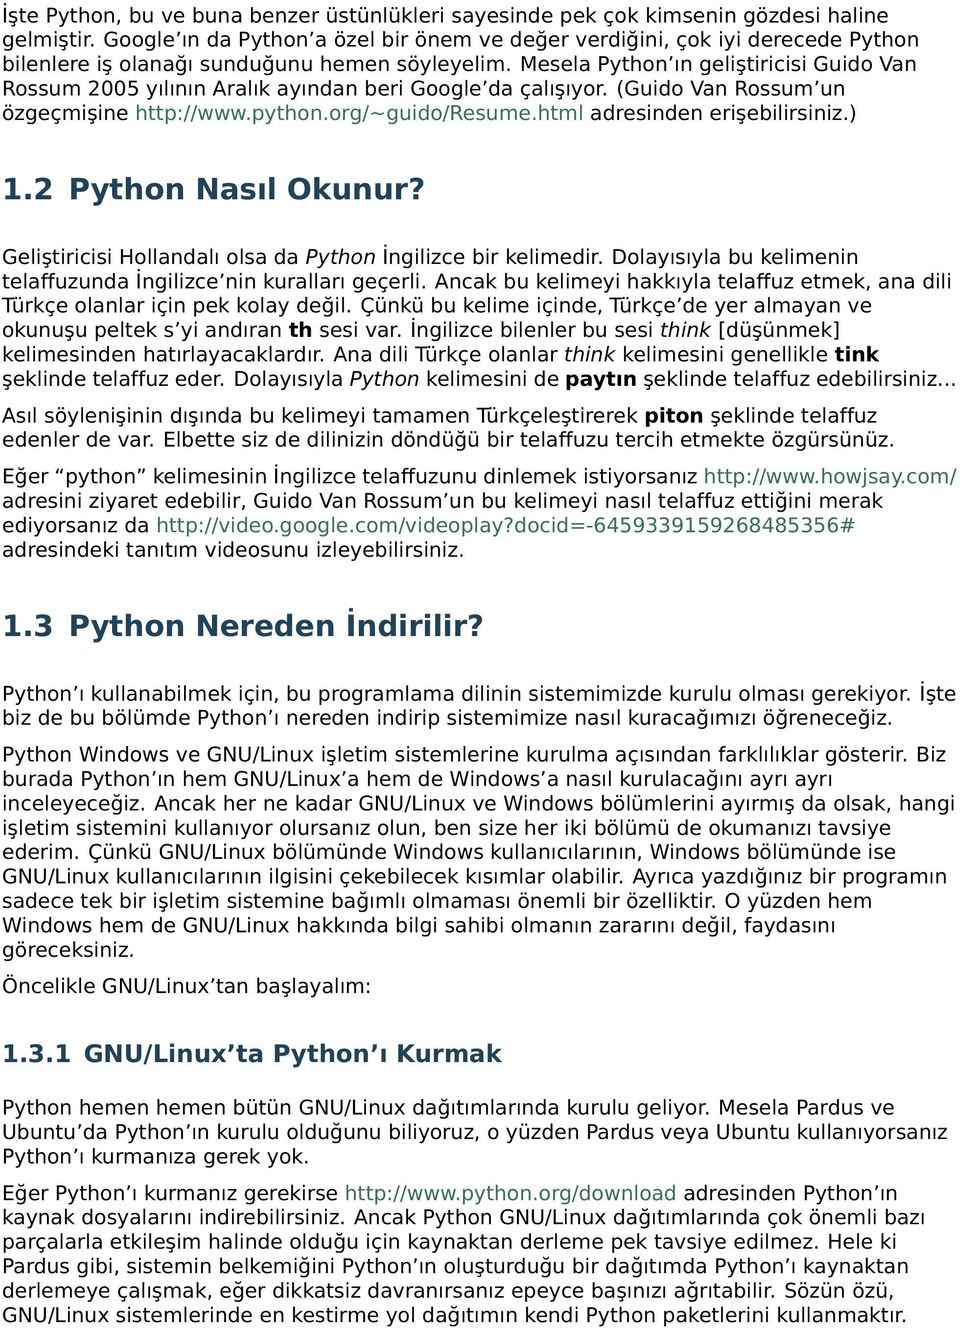 Mesela Python ın geliştiricisi Guido Van Rossum 2005 yılının Aralık ayından beri Google da çalışıyor. (Guido Van Rossum un özgeçmişine http://www.python.org/~guido/resume.